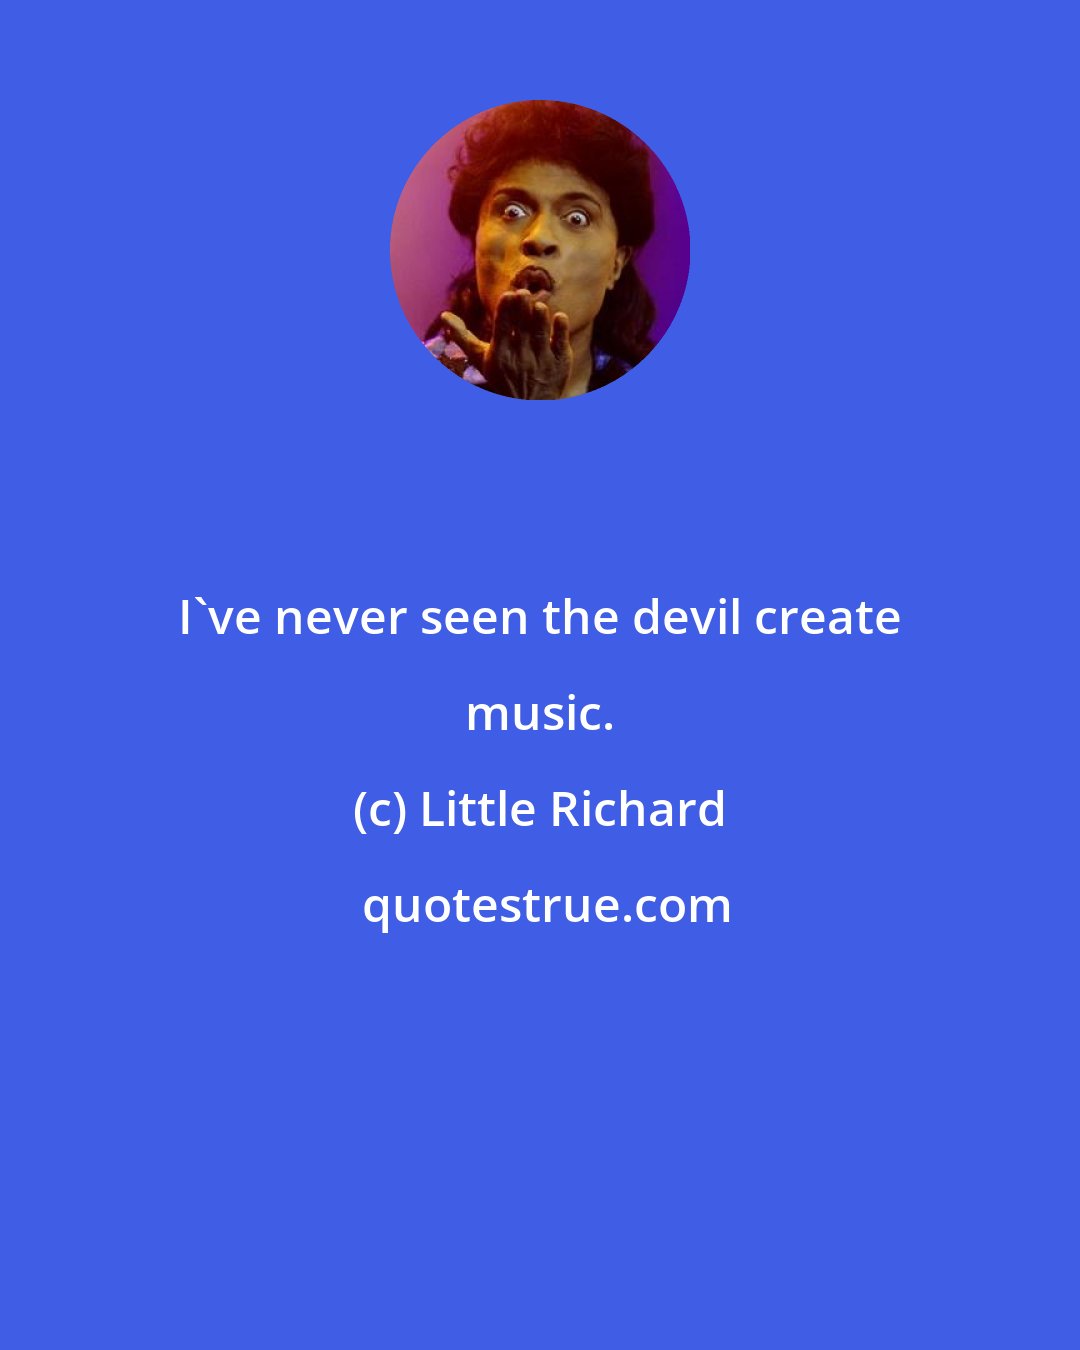 Little Richard: I've never seen the devil create music.